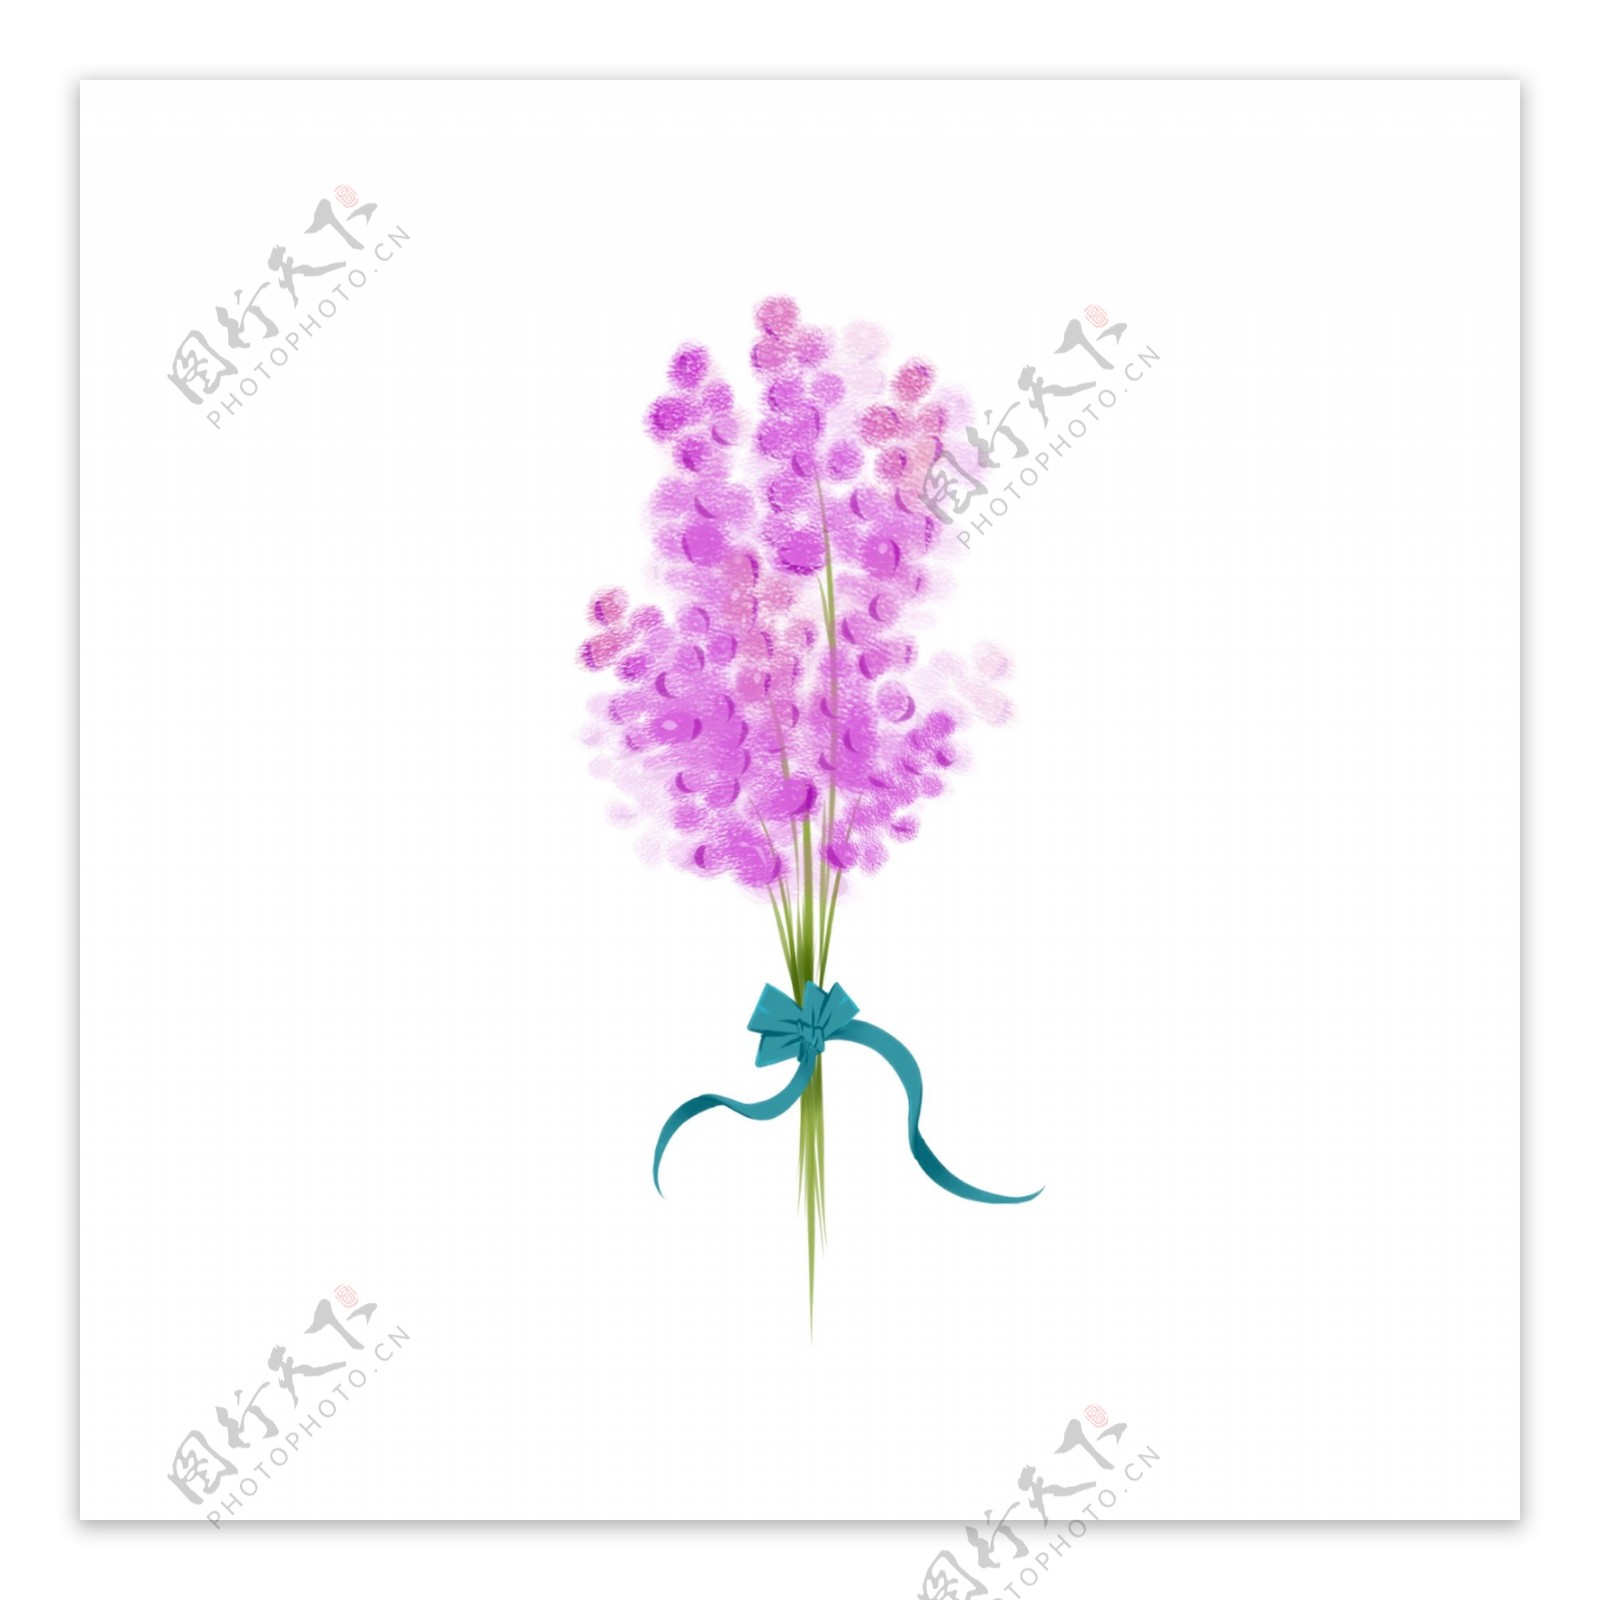 手绘花束之一束浪漫花香薰衣草紫色花朵素材